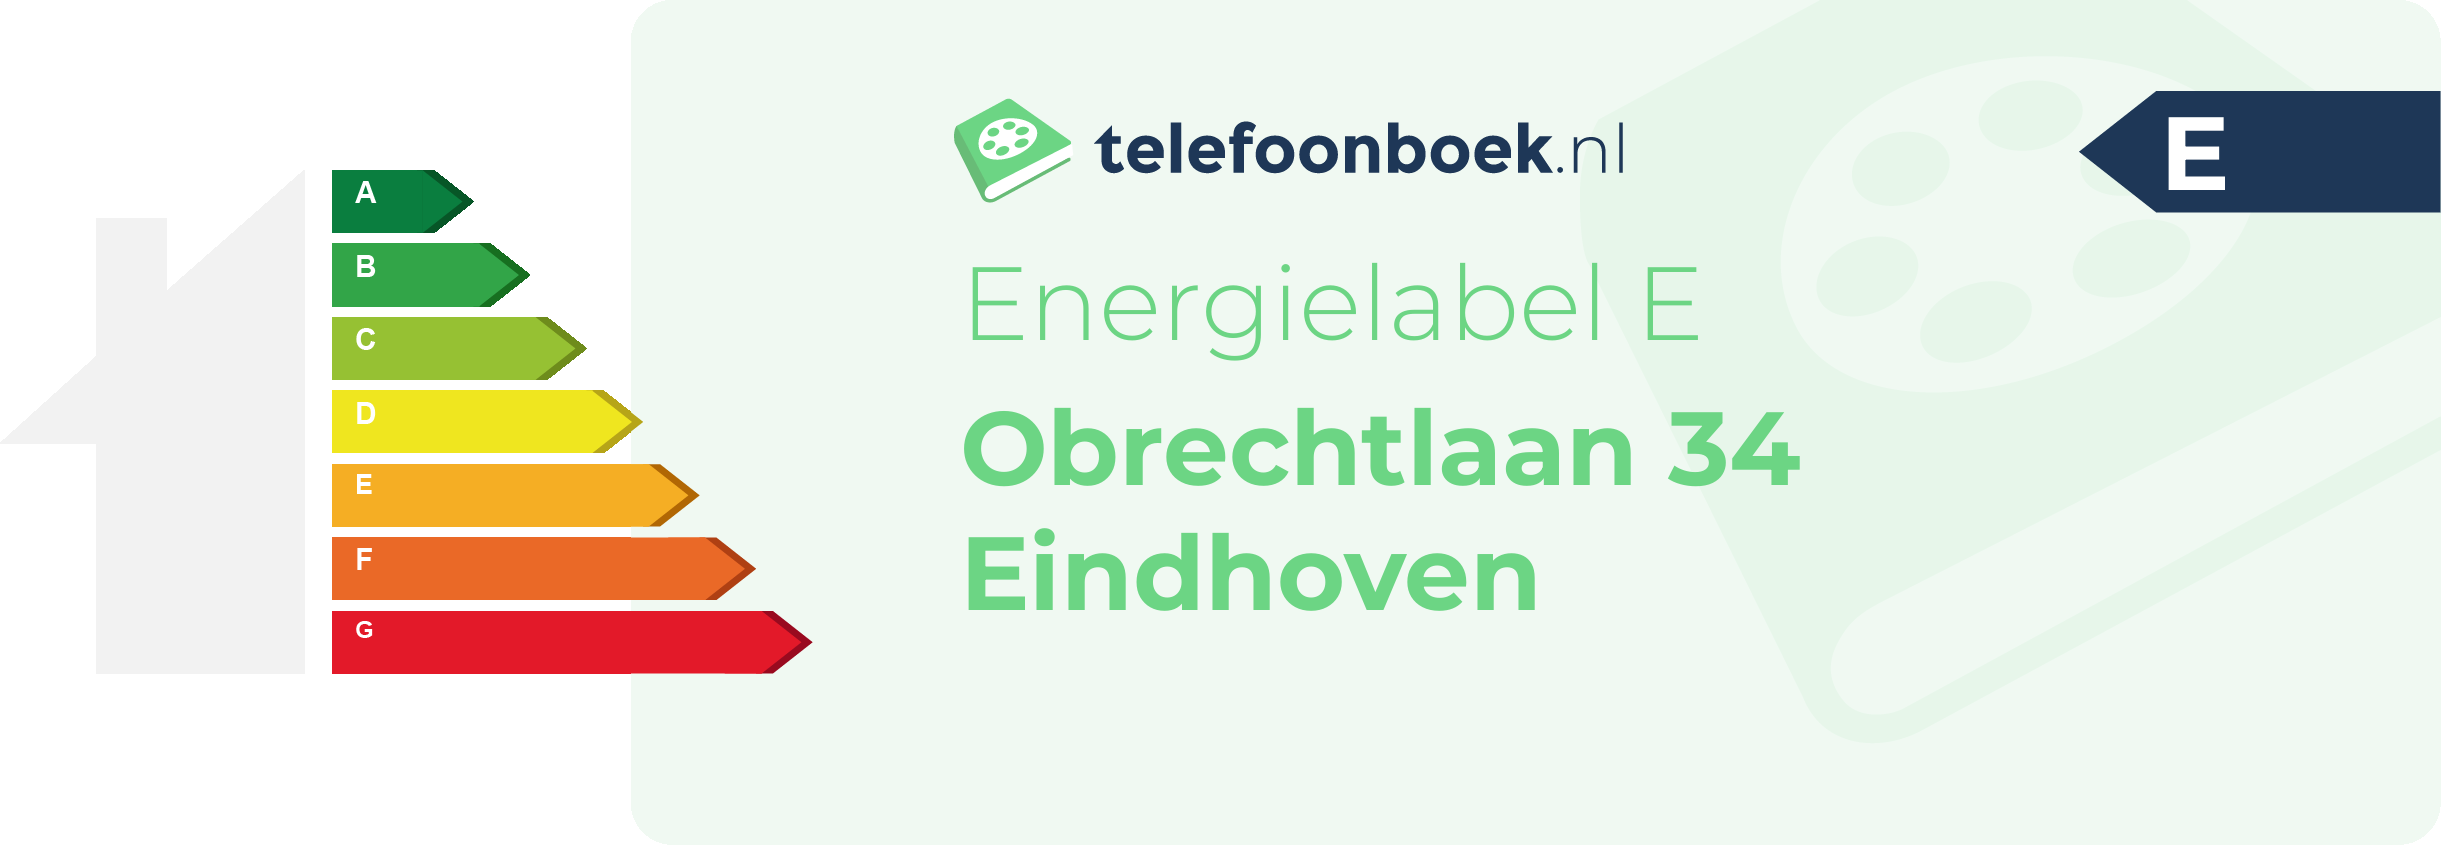 Energielabel Obrechtlaan 34 Eindhoven